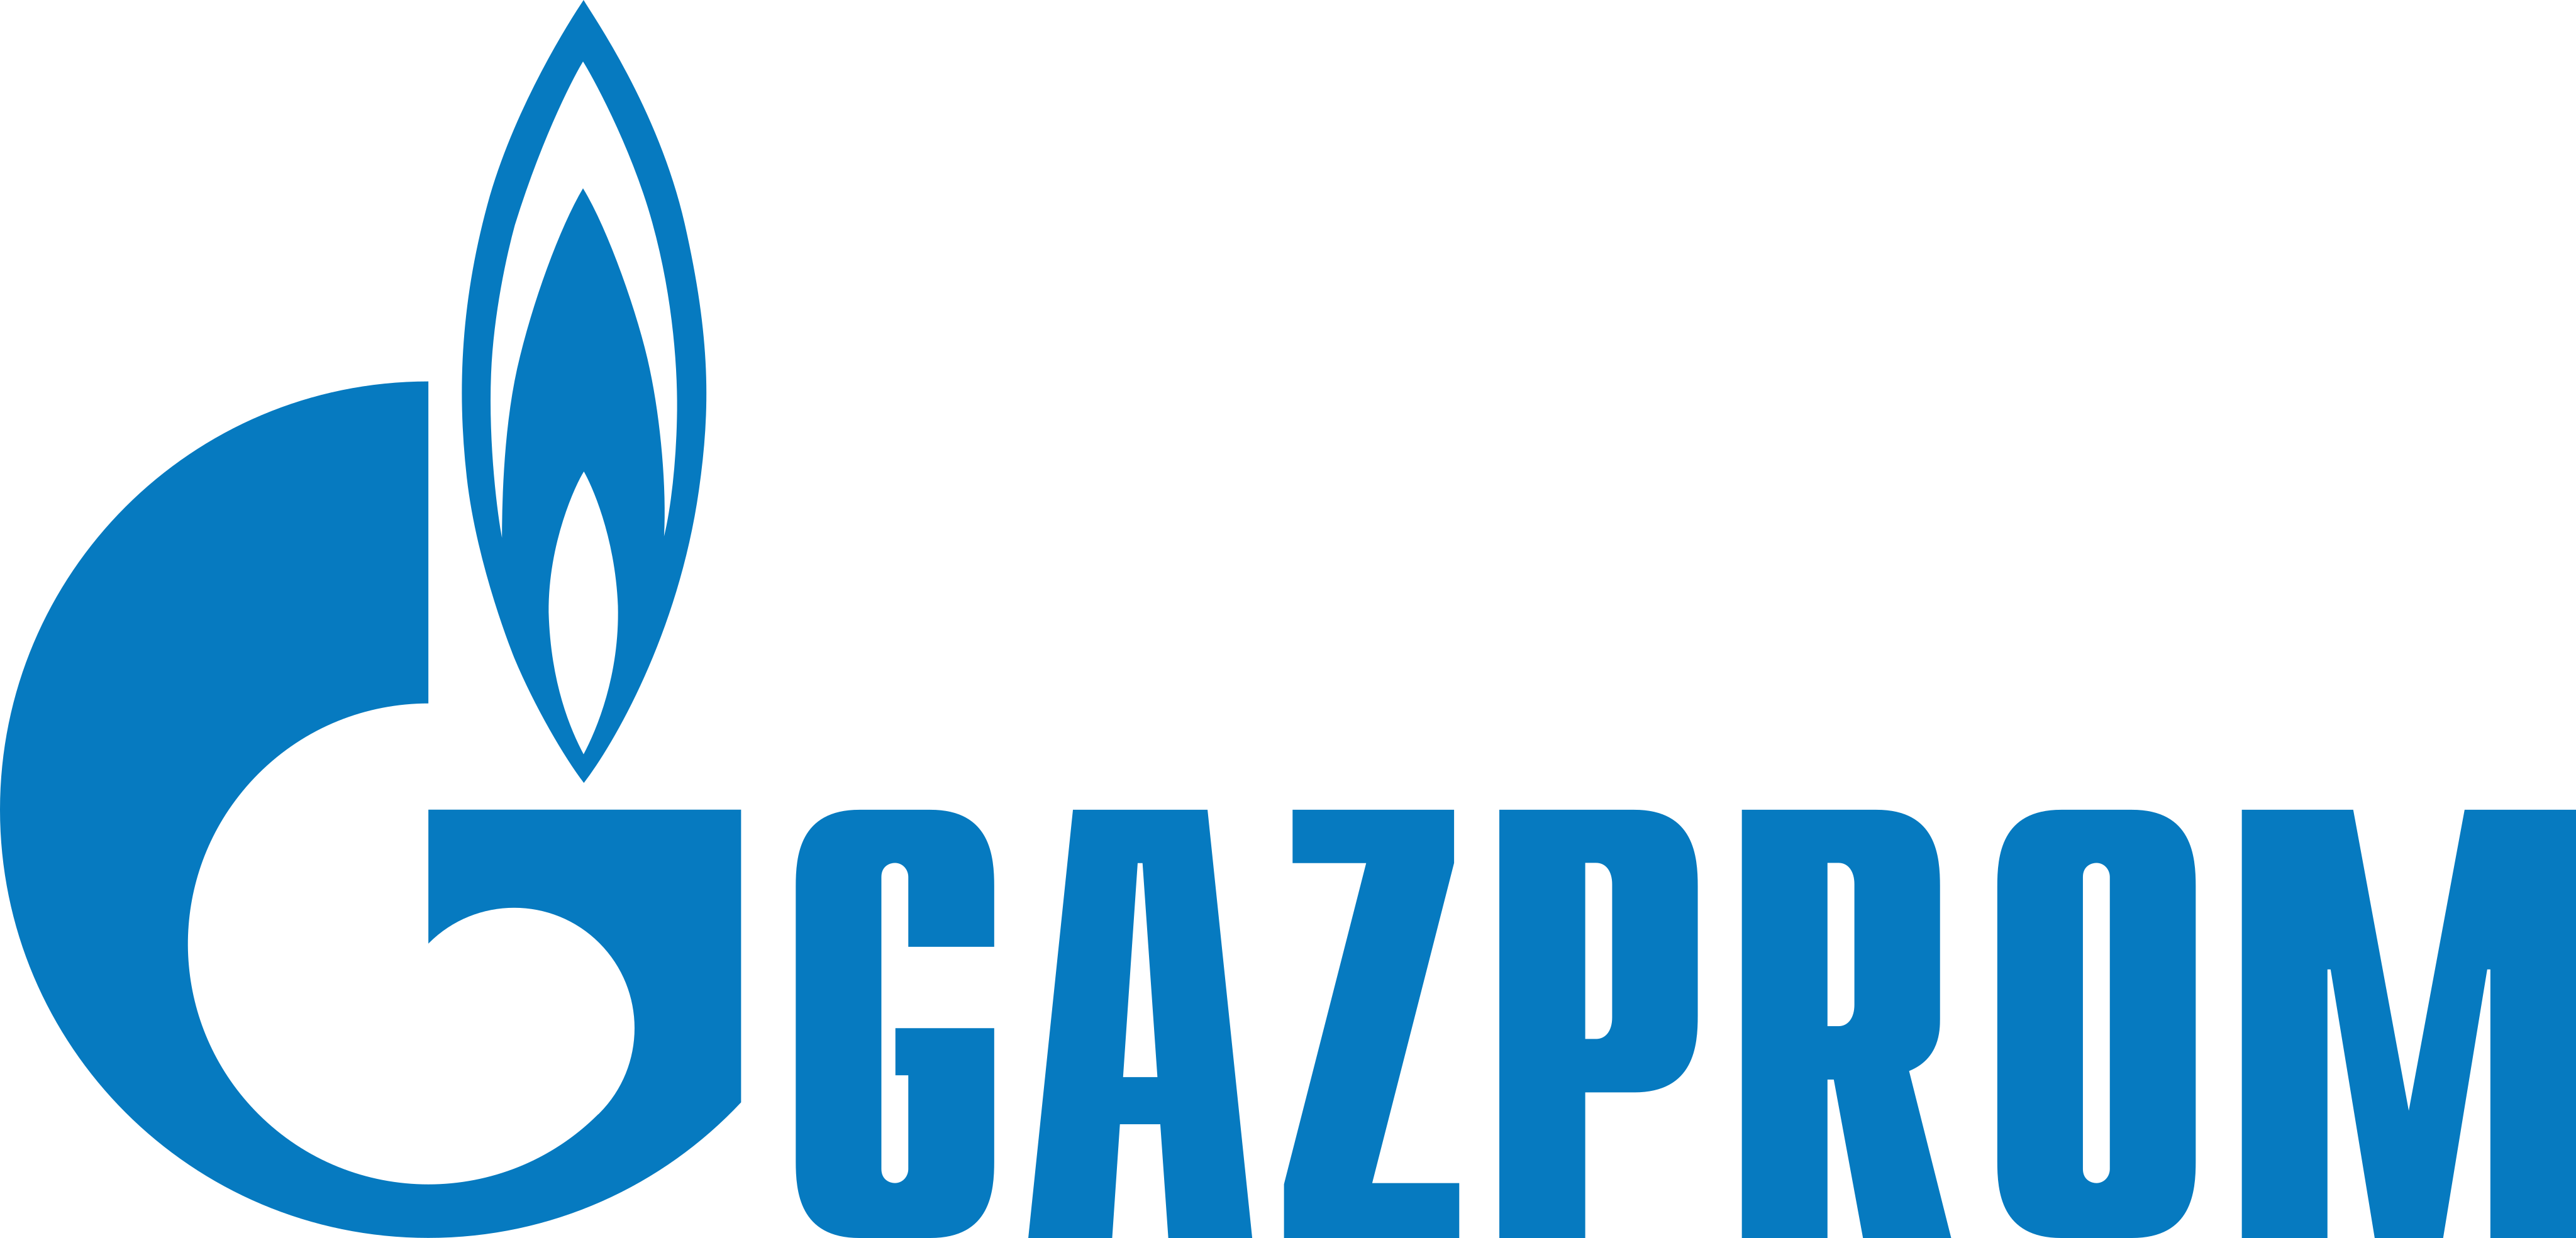 Gazprom Logo.